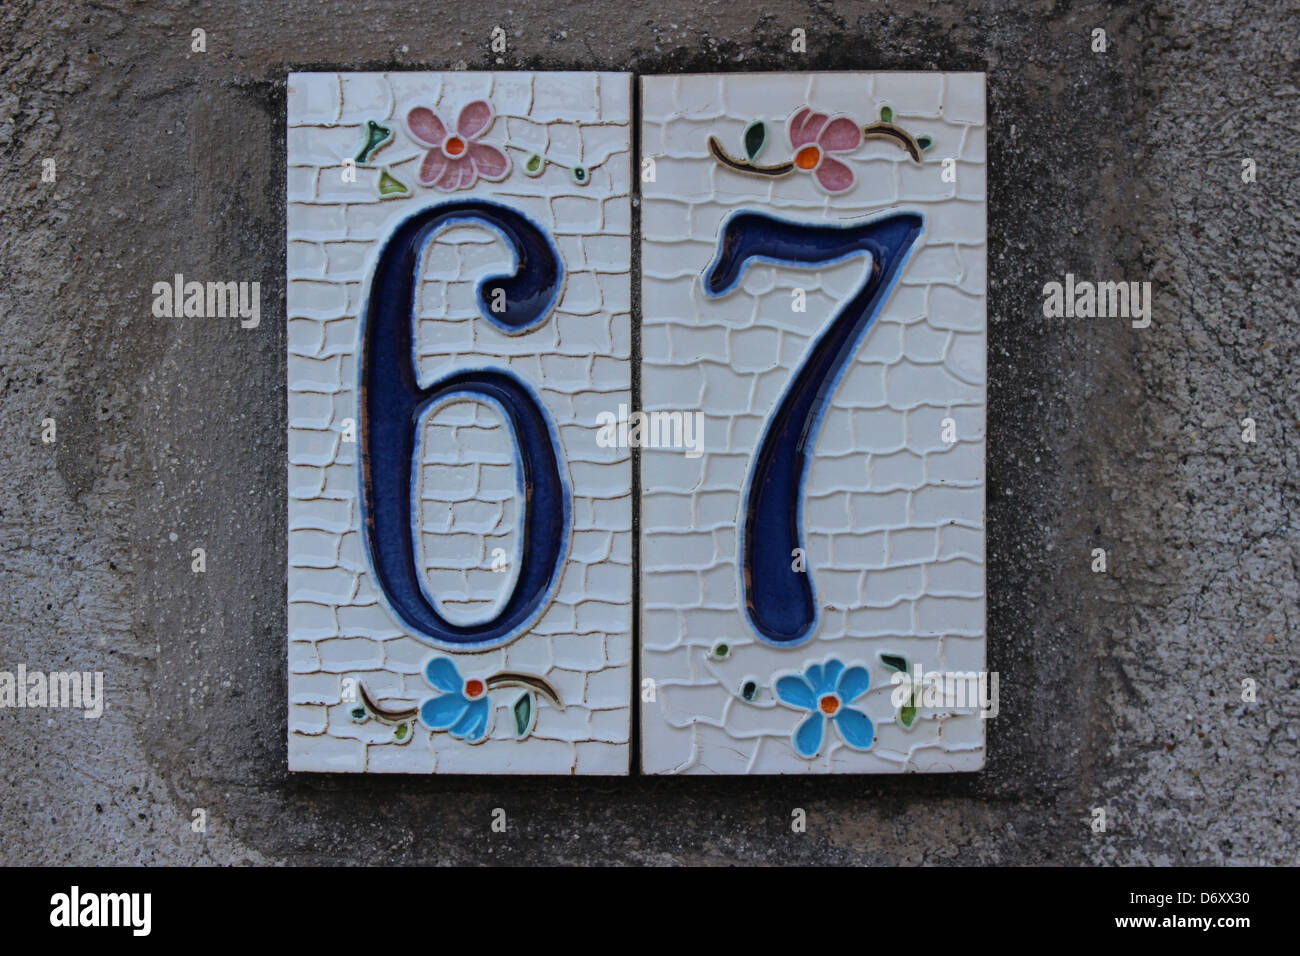 67 Tile numbered (door number) Stock Photo